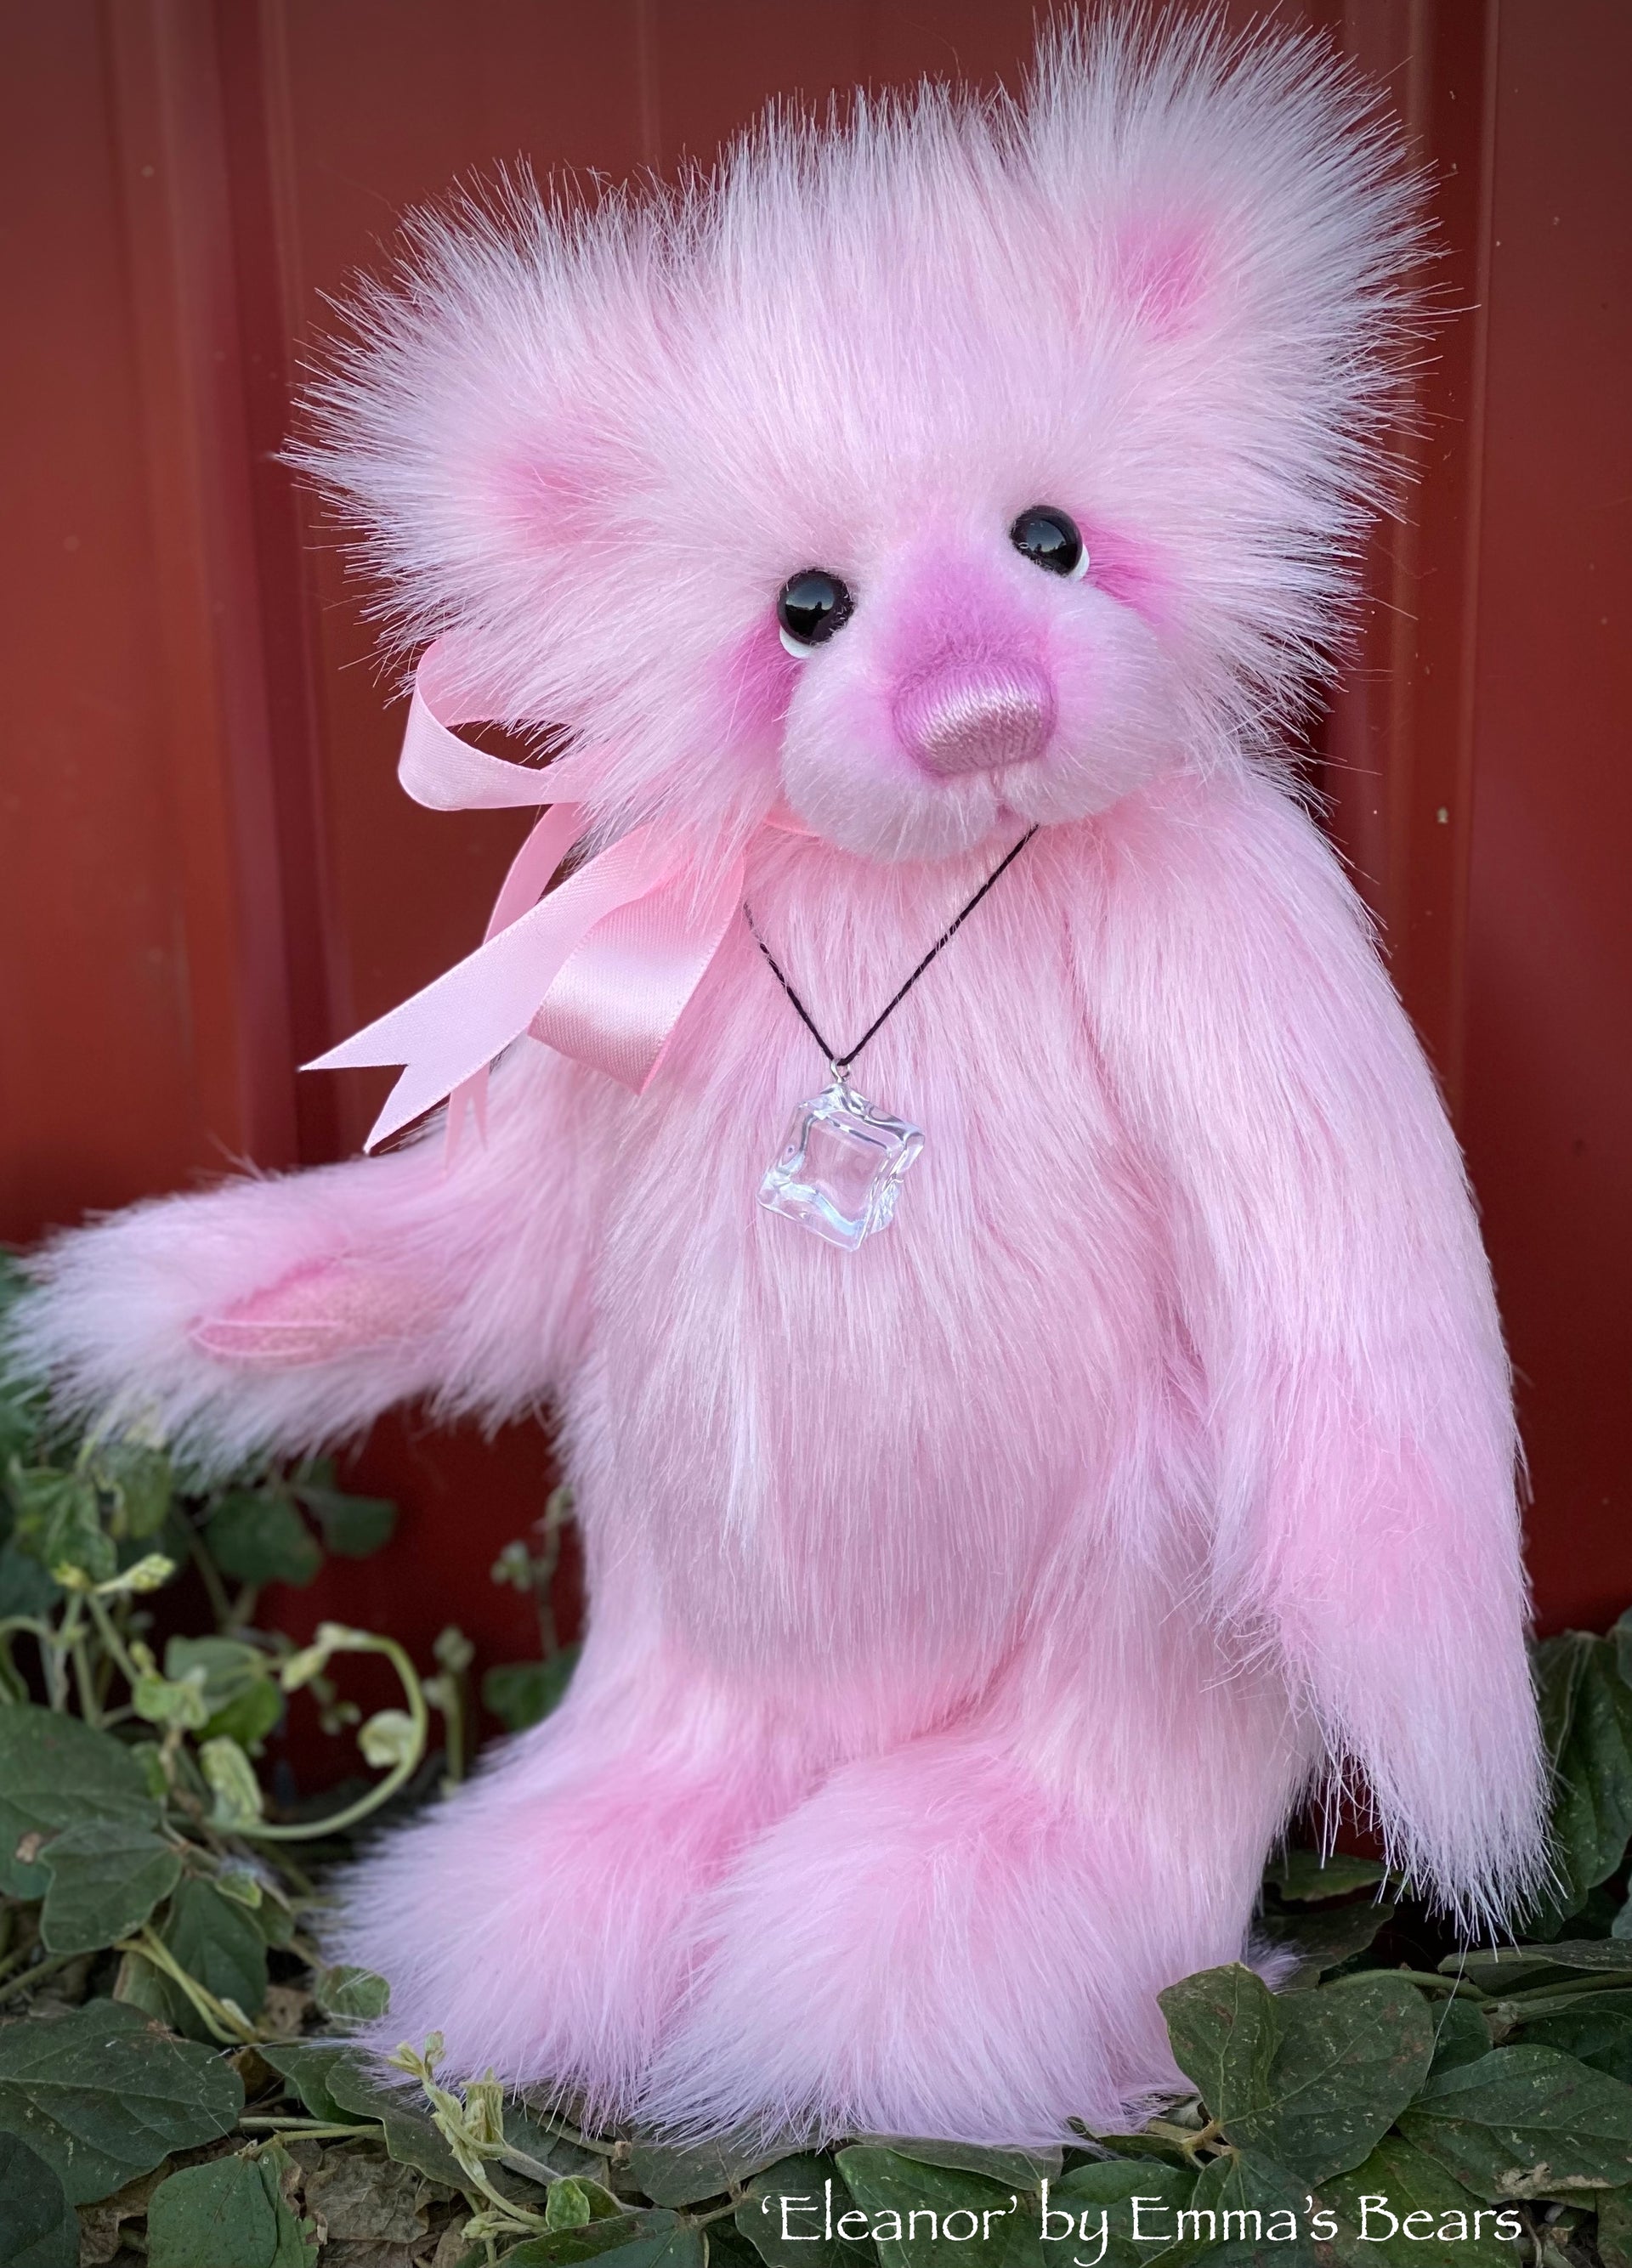 Eleanor - 13" faux fur Artist Bear by Emma's Bears - OOAK